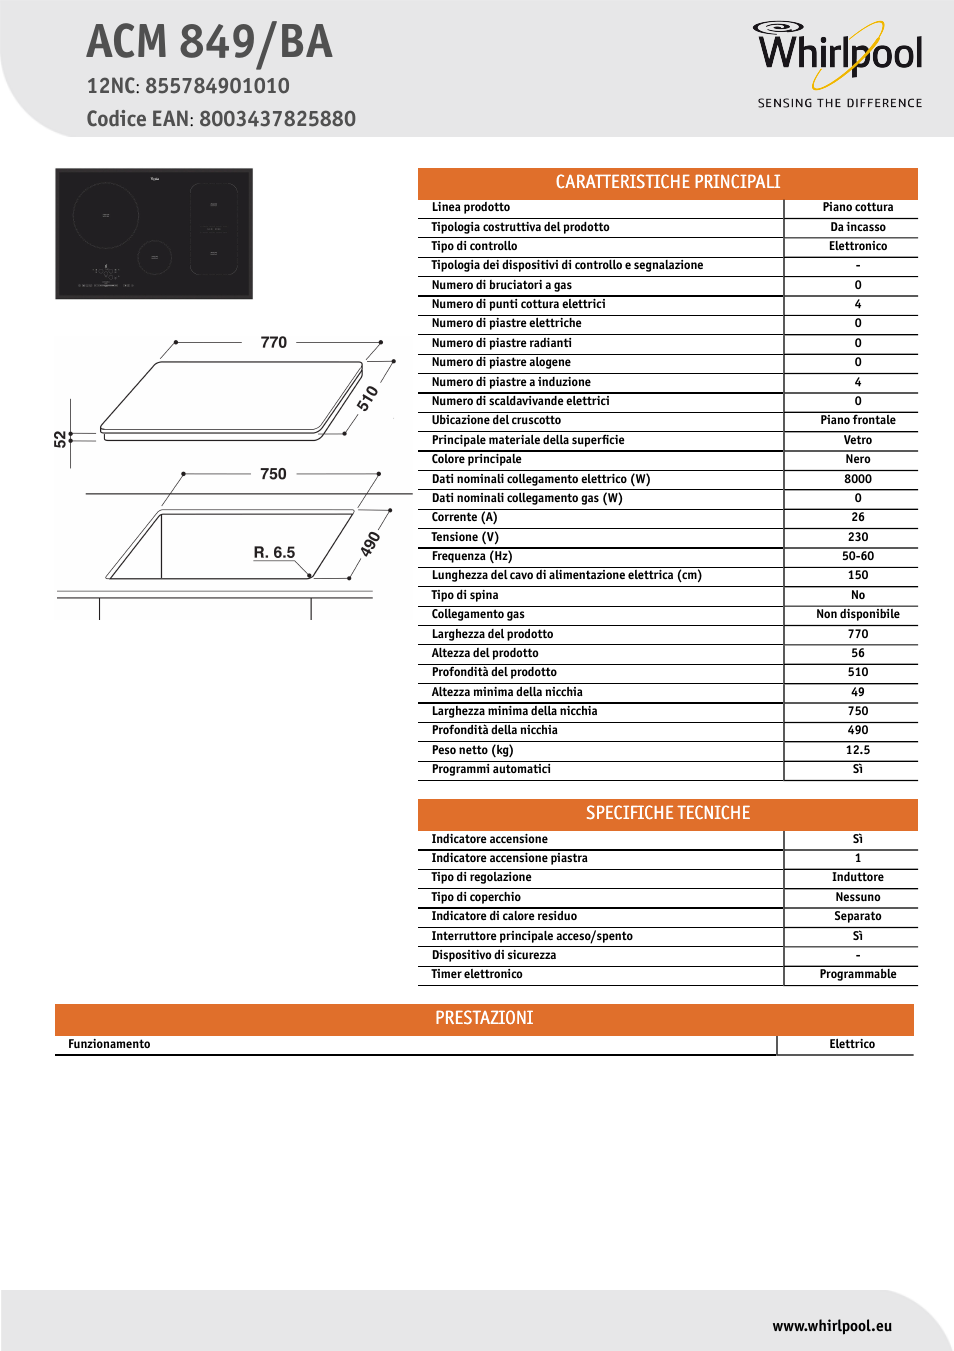 Whirlpool ACM 849-BA Manuale d'uso | Pagine: 1